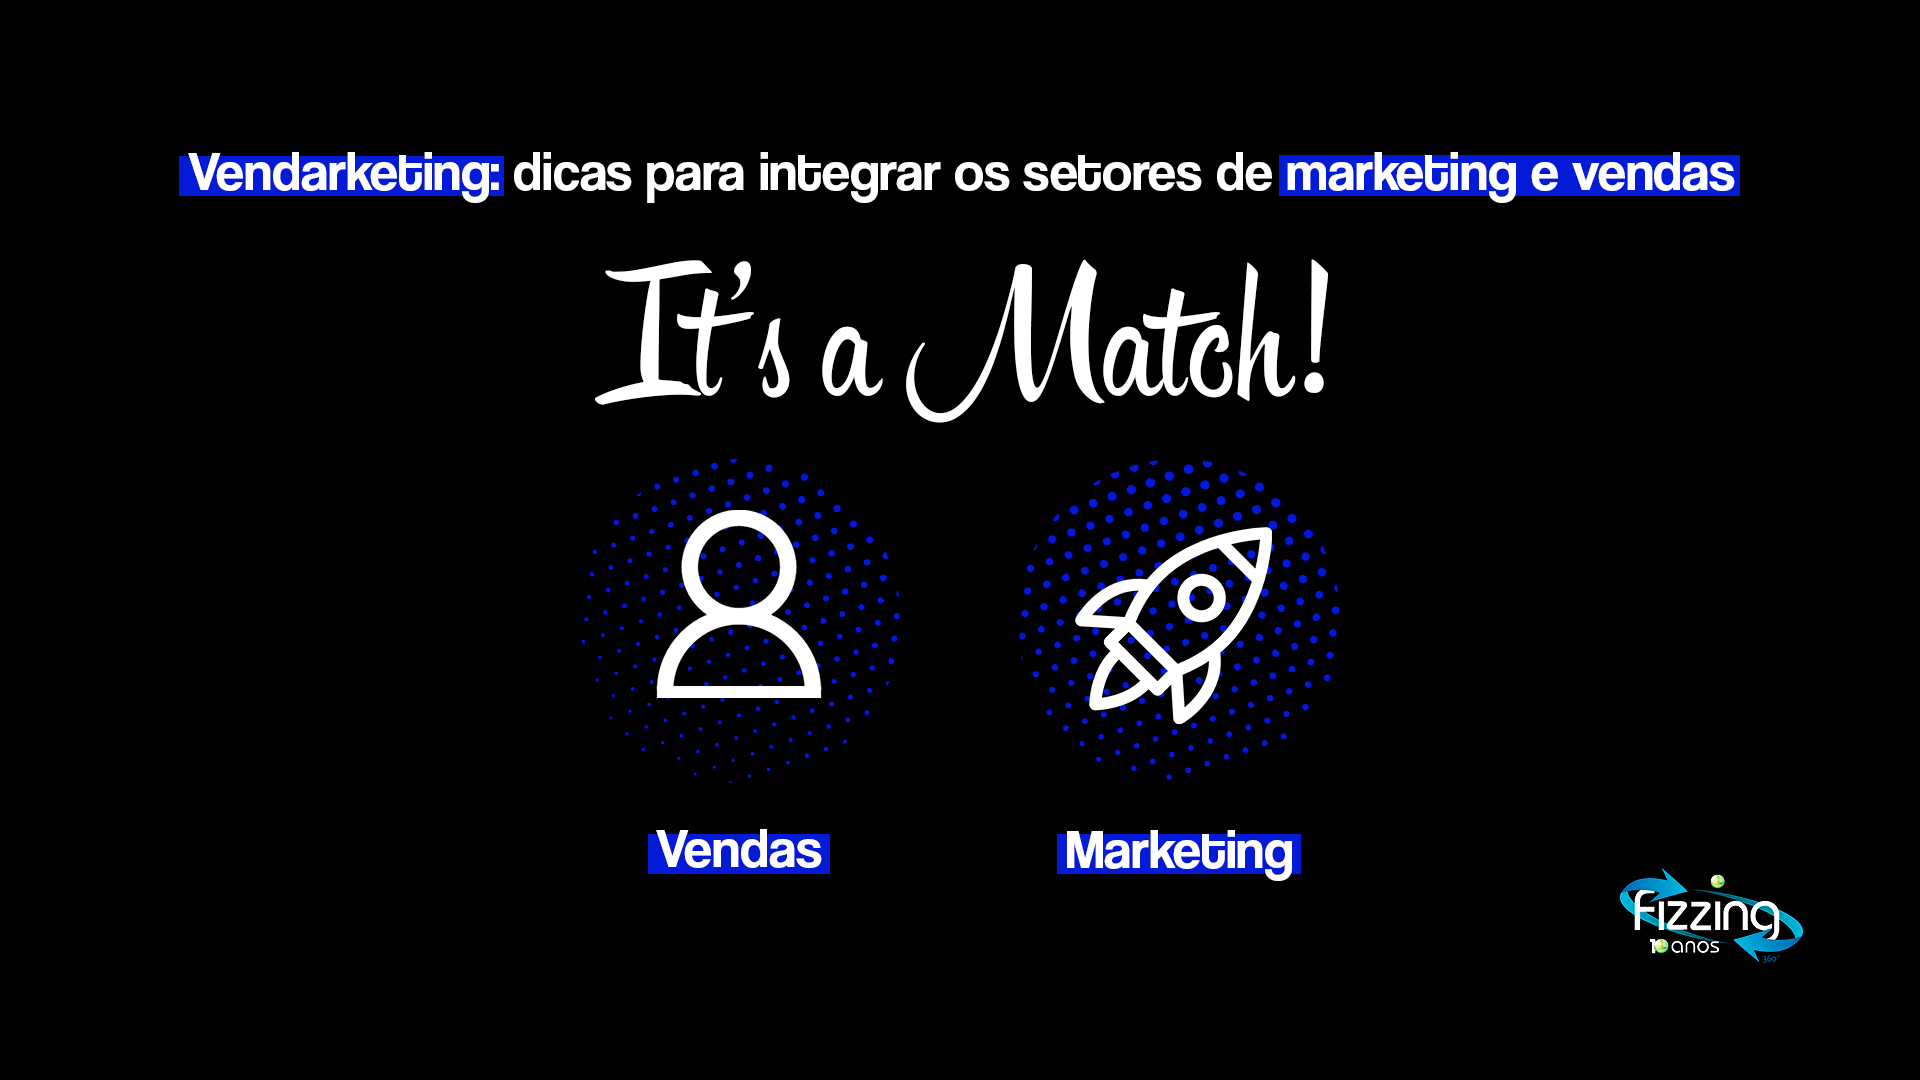 Frase "It's a Match", com a tipografia do Tinder. Abaixo dela, um ícone de pessoa, representando vendas, e outro de foguete, representando marketing. No topo, a seguinte frase: "Vendarketing: dicas para integrar os setores de marketing e vendas".